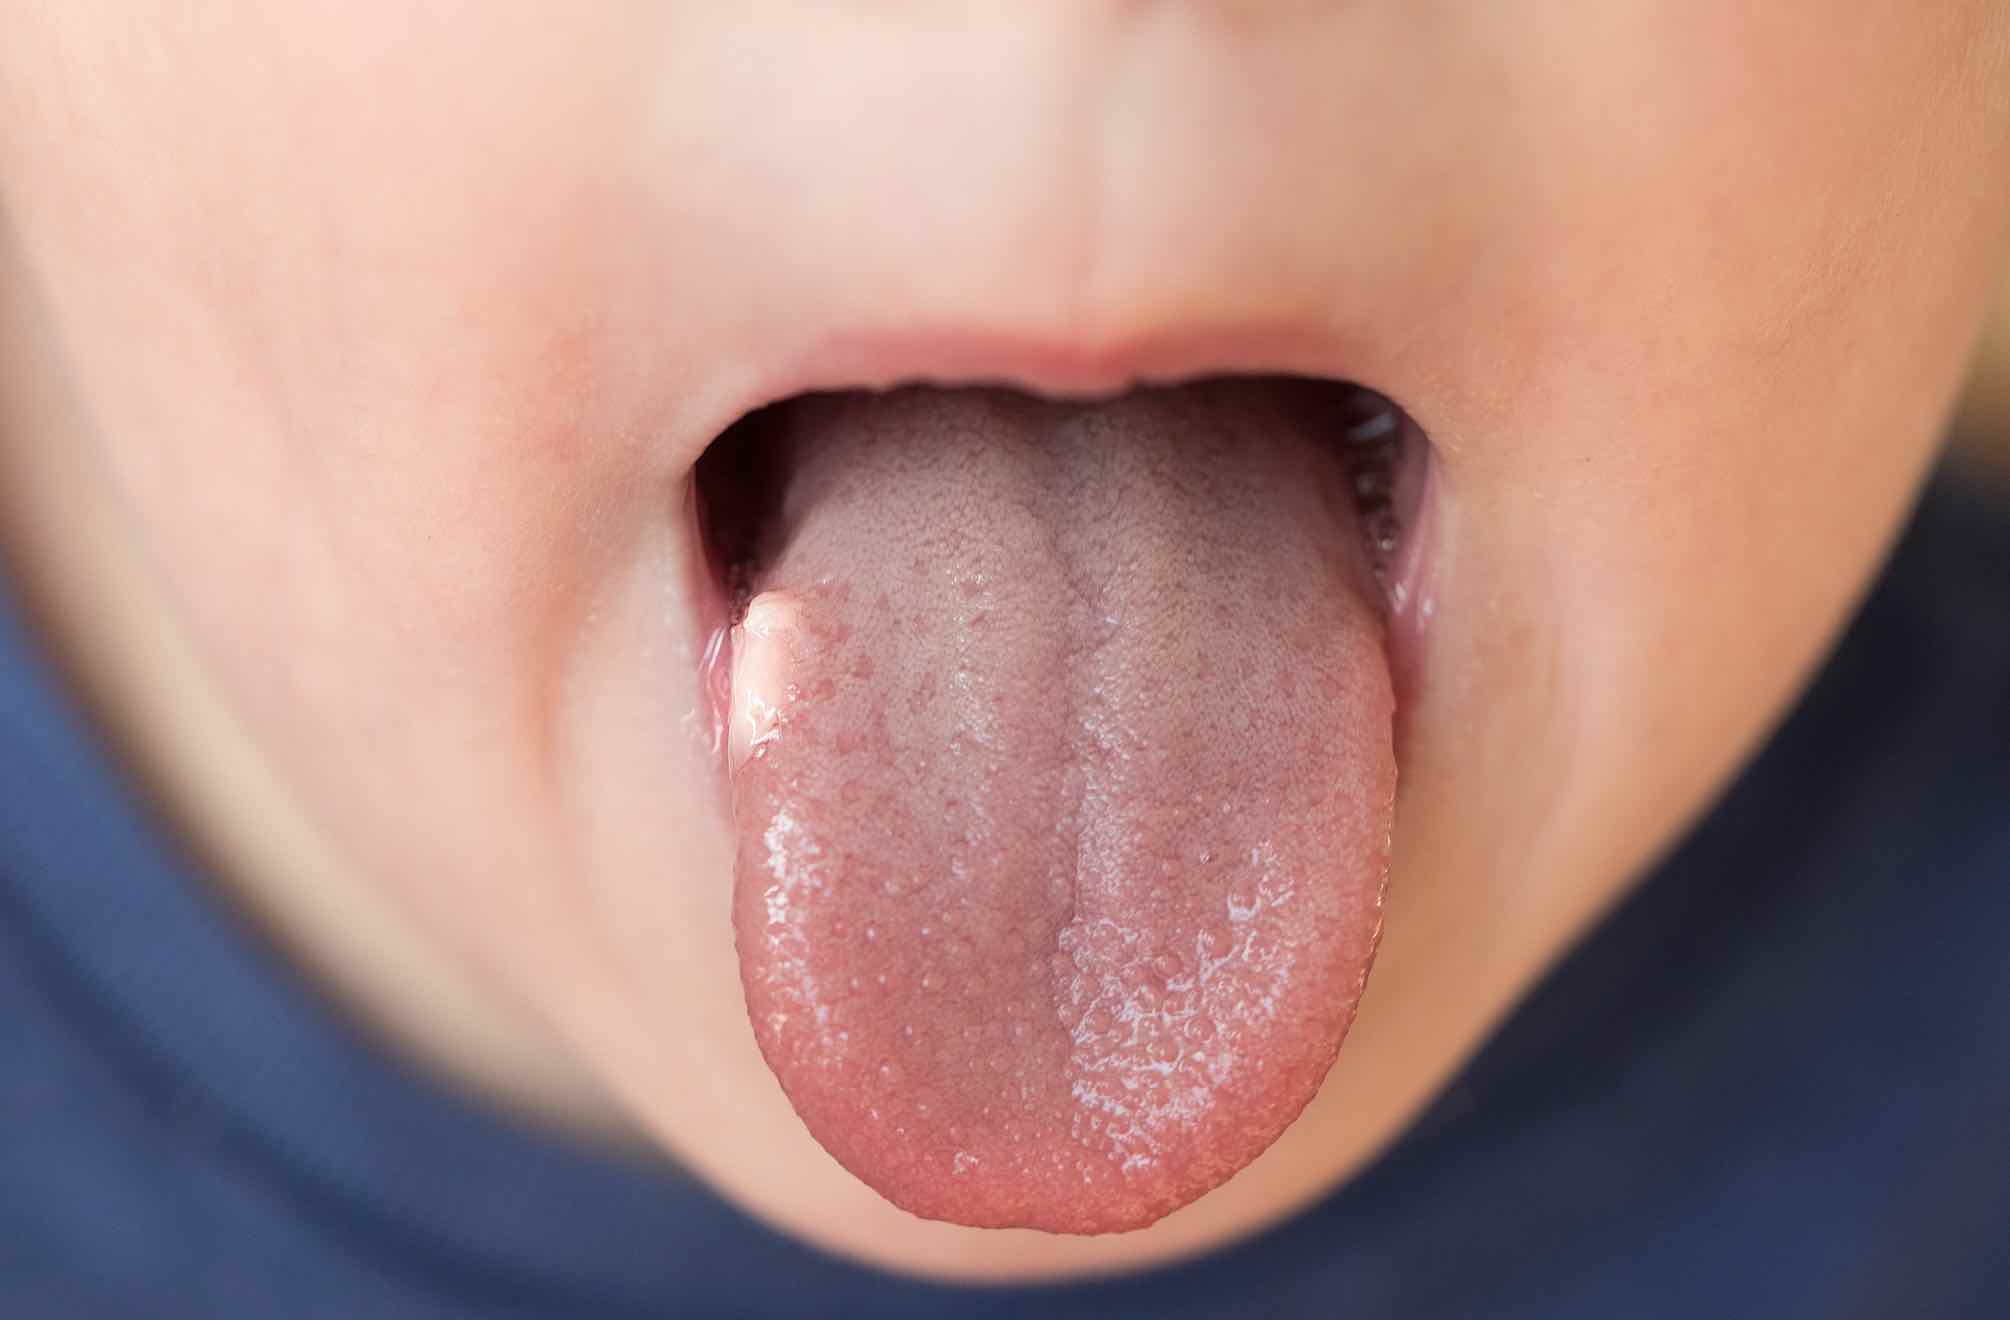 Lesiones en la lengua Trastornos bucales y dentales | Vitaldent